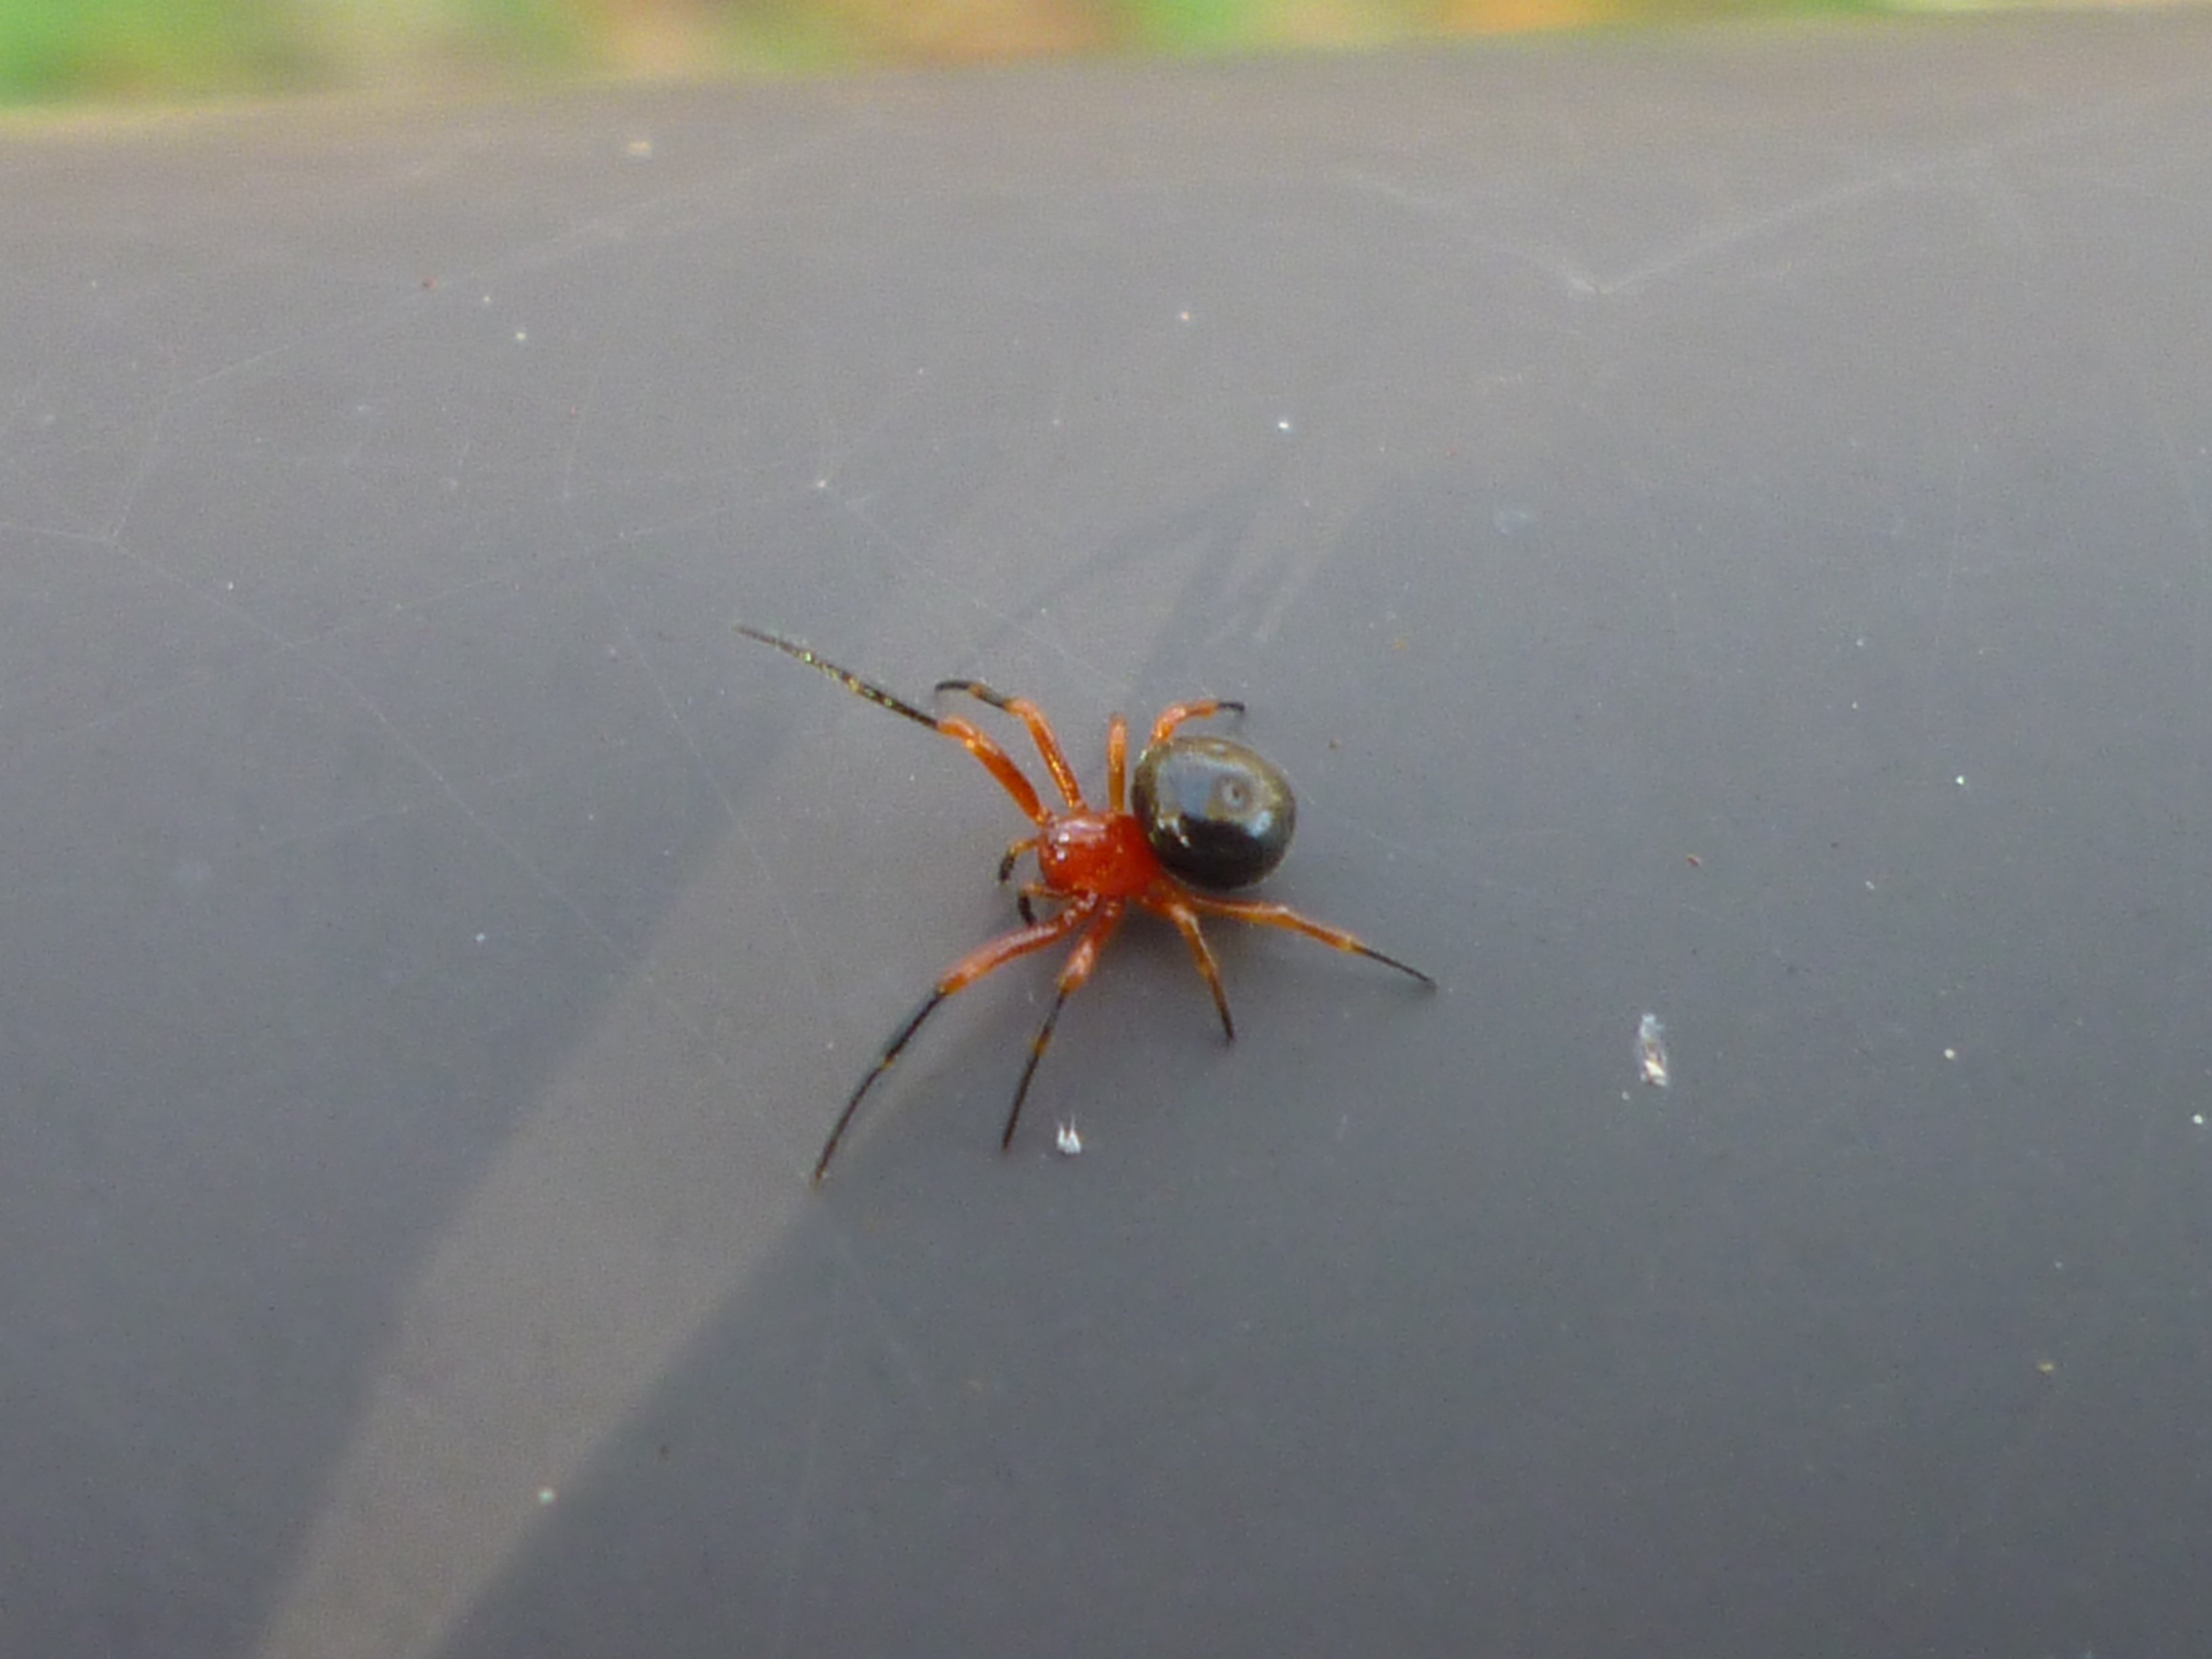 松田まゆみ 散歩道のクモ サラグモのように見える小さいクモだがヒメグモ科の不明種 赤と黒のコントラストがとても美しい 以前 死んだマヒワの胃の中に入っていたことがある T Co Bk8rhrjmqc Twitter